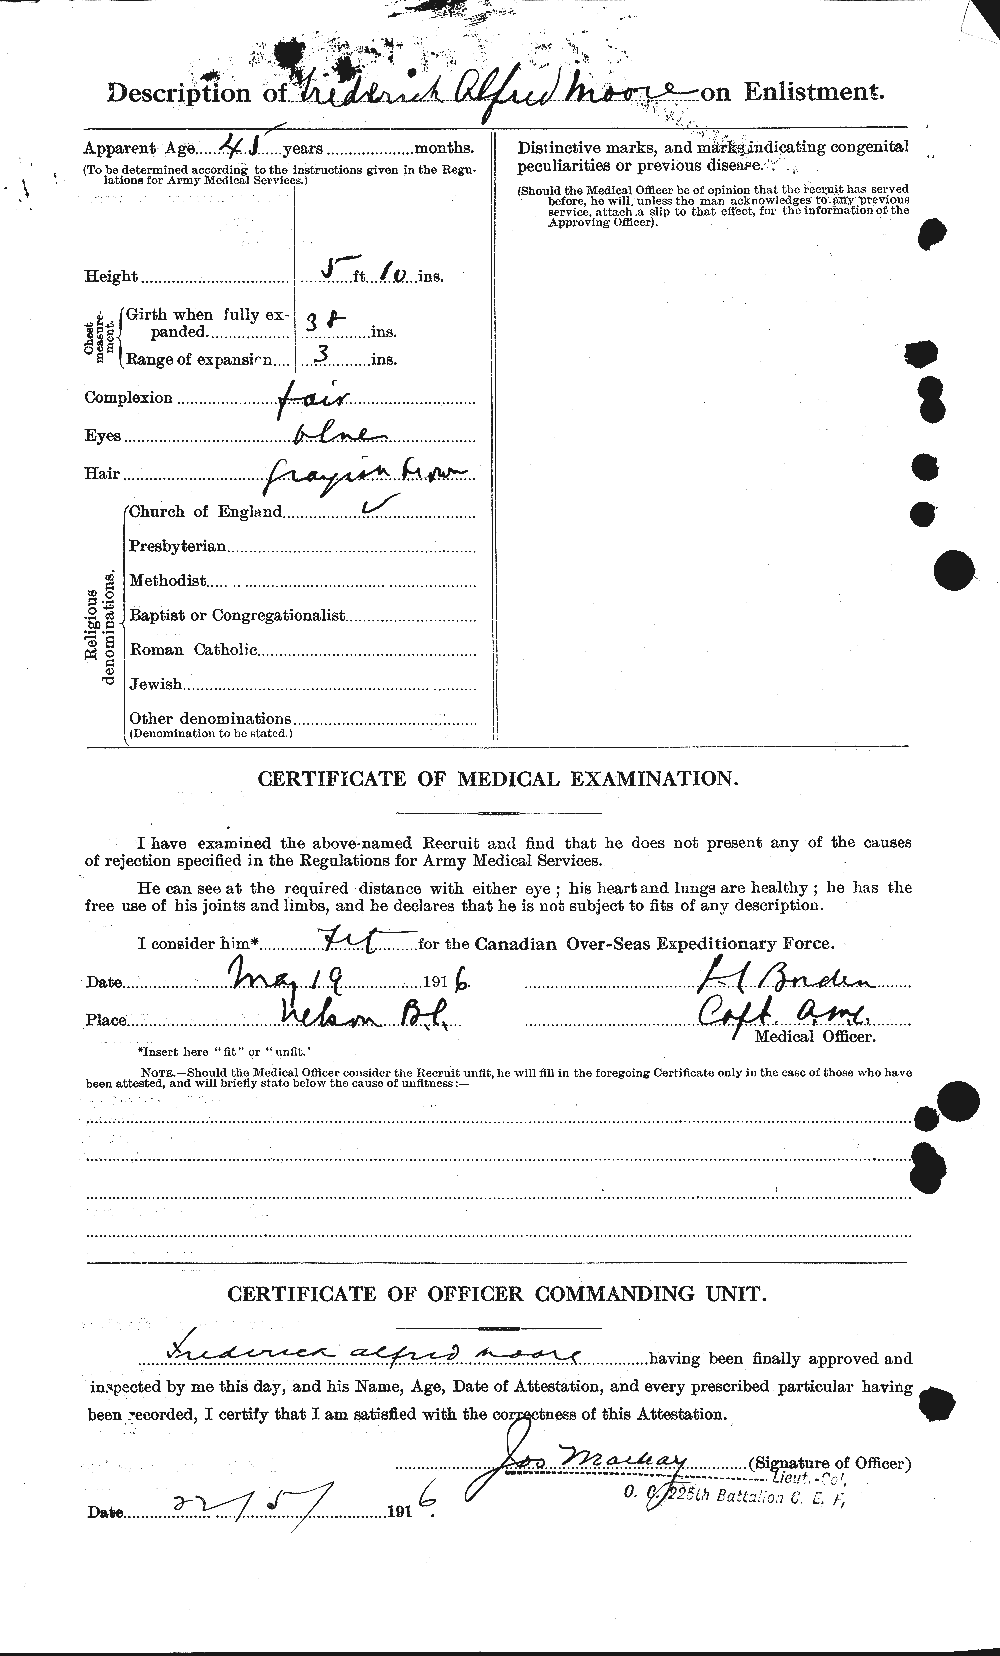 Dossiers du Personnel de la Première Guerre mondiale - CEC 506739b